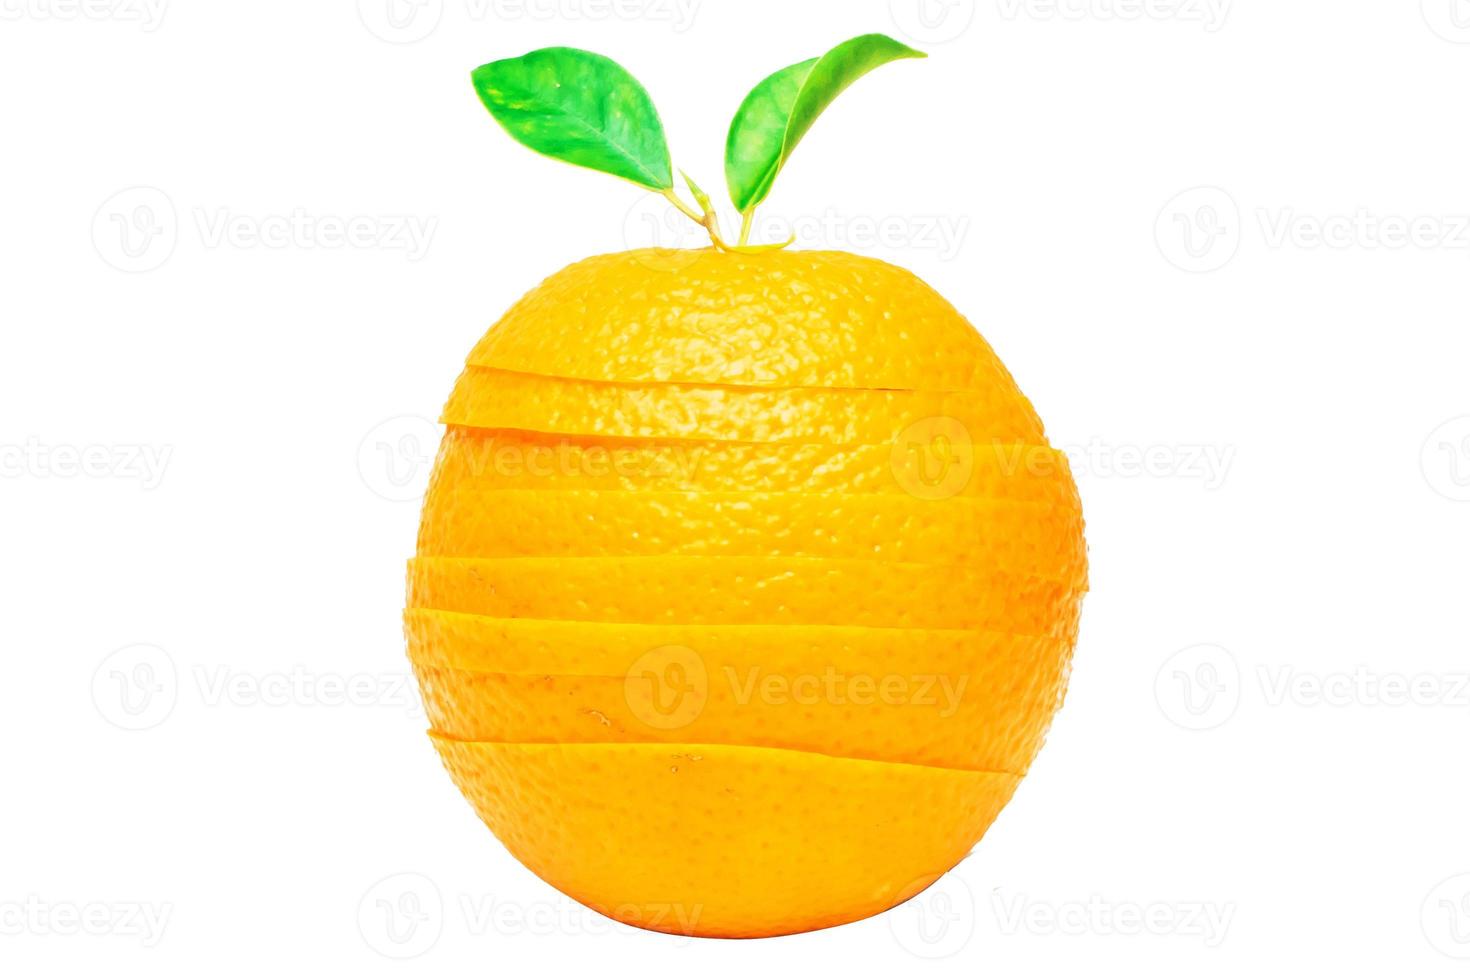 Orangenfrucht auf weißem Hintergrund foto